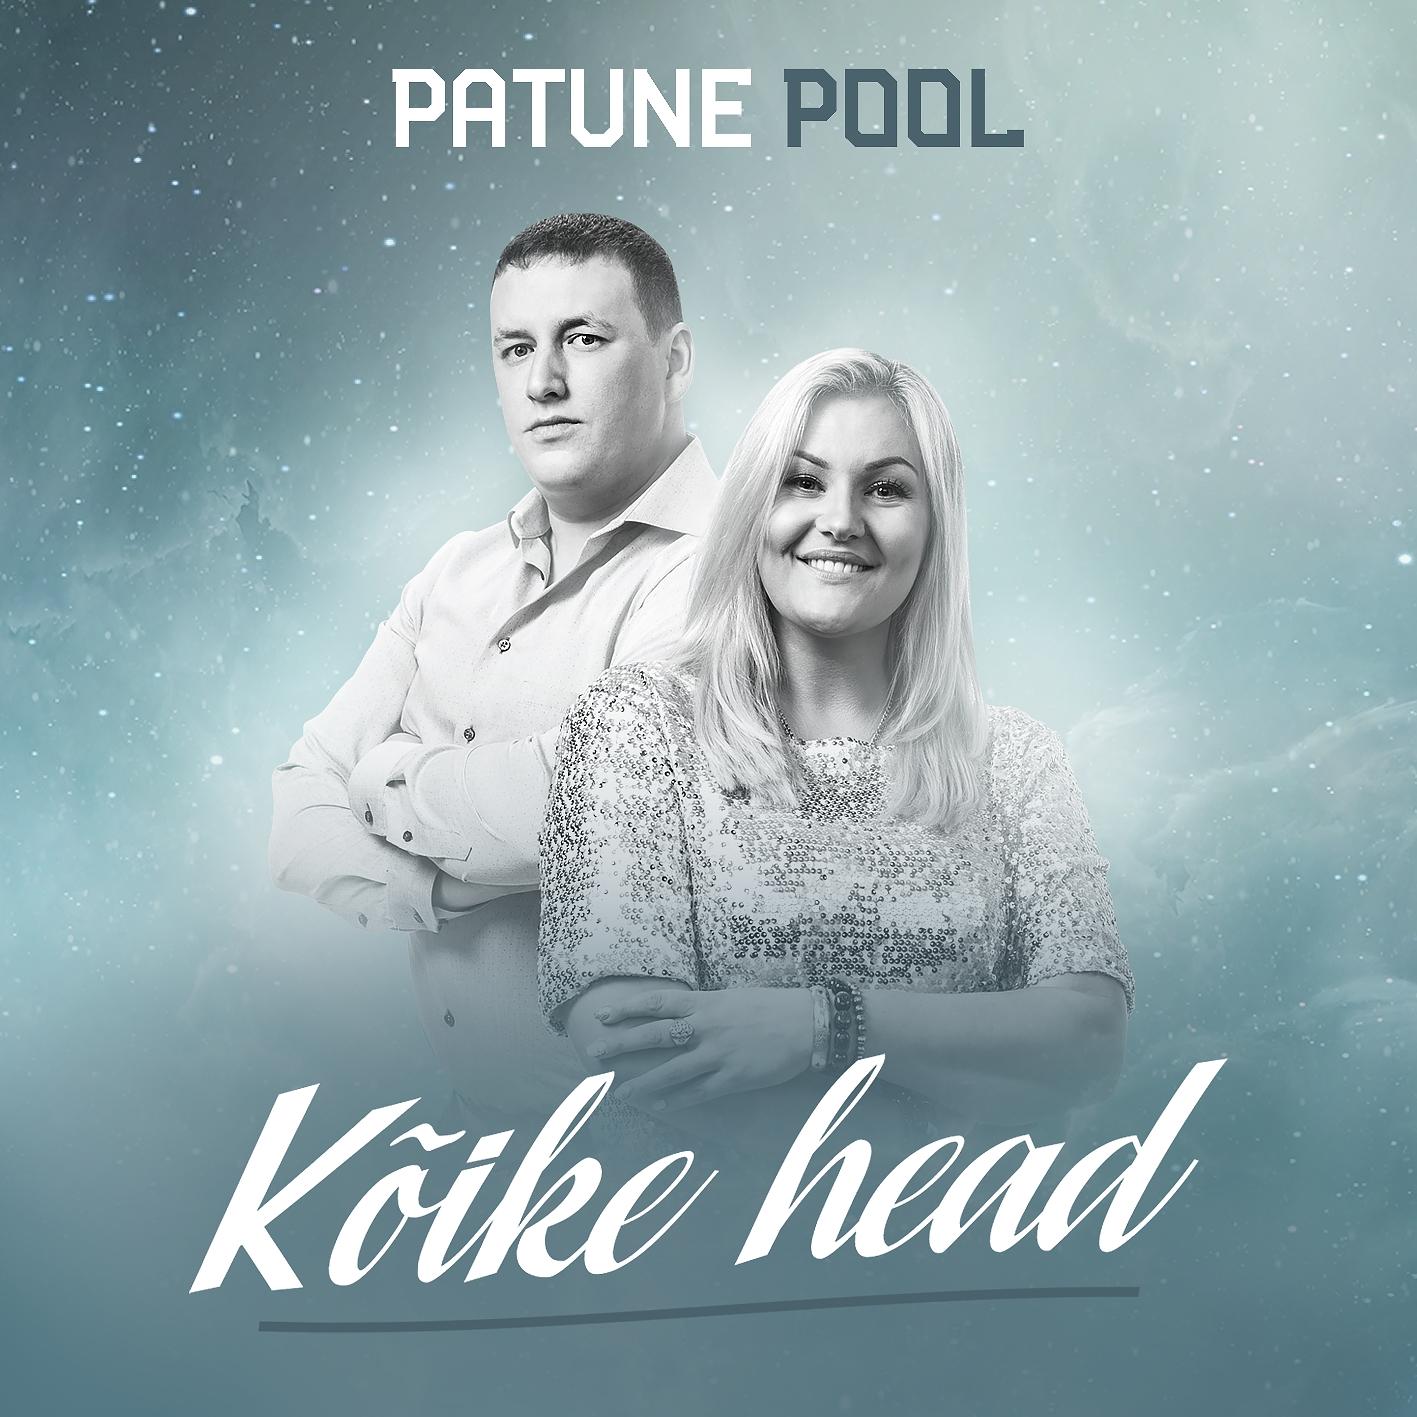 PATUNE POOL - KÕIKE HEAD EP (2018) CD